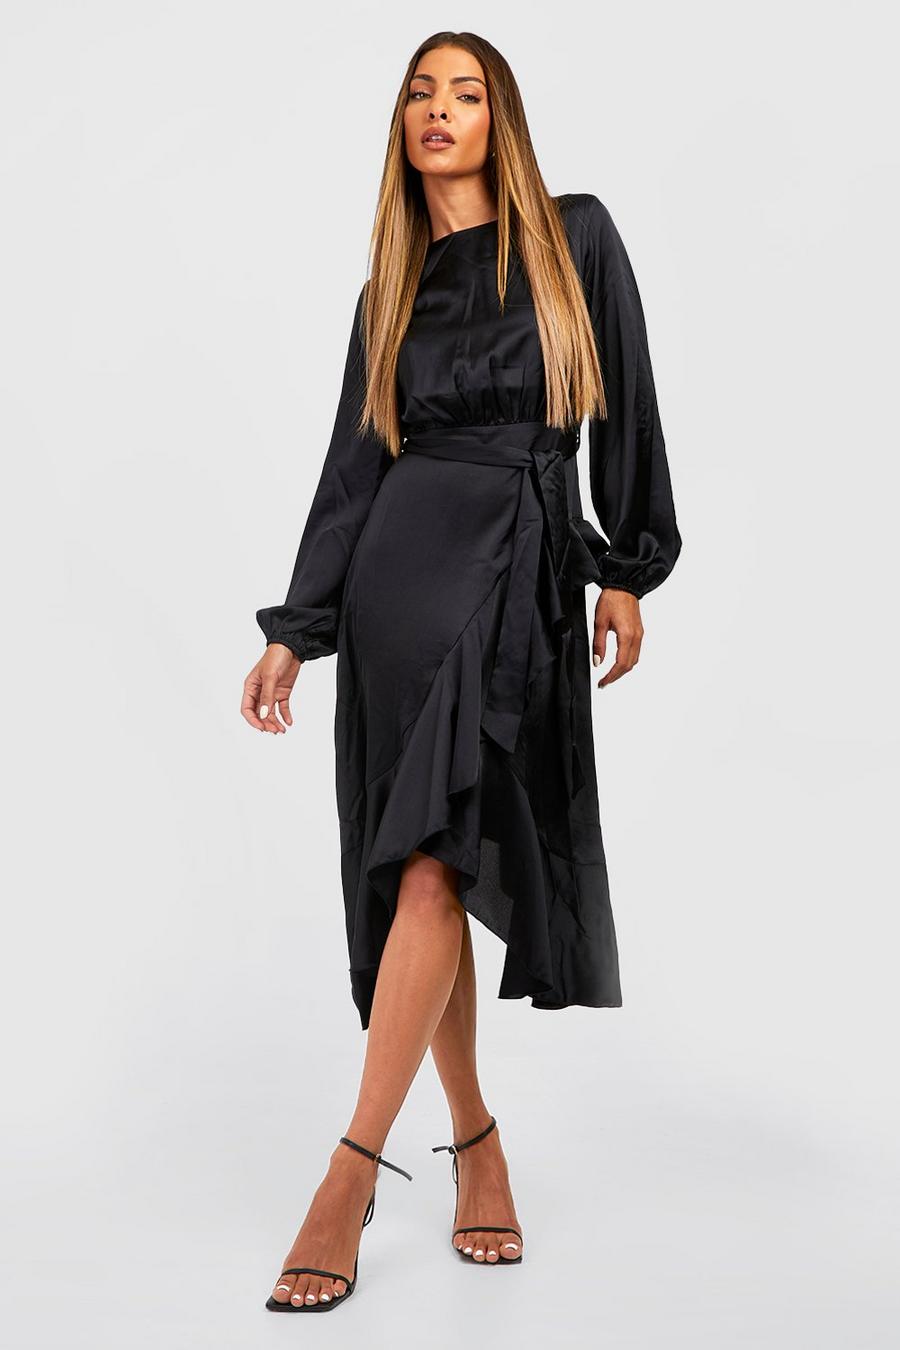 שחור nero שמלת סאטן מידי עם מעטפת, שרוולים ארוכים וסלסול